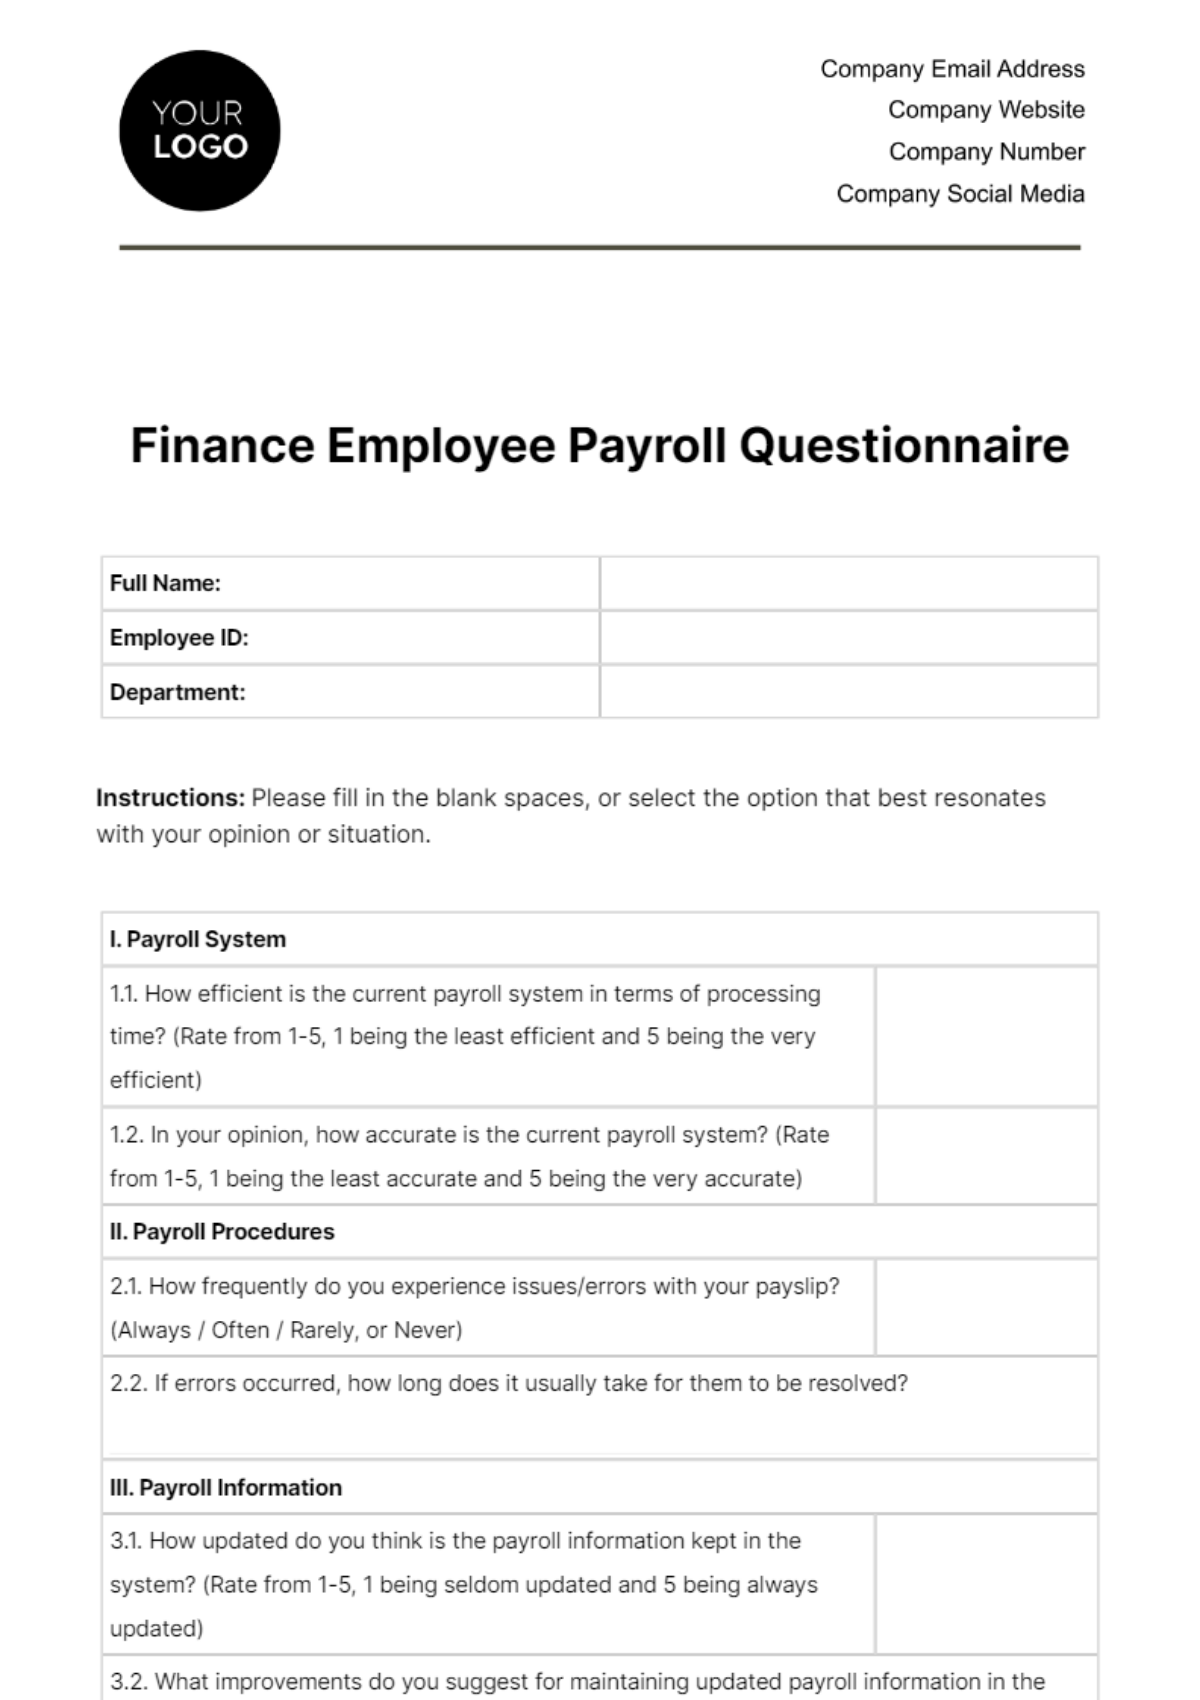 Finance Employee Payroll Questionnaire Template